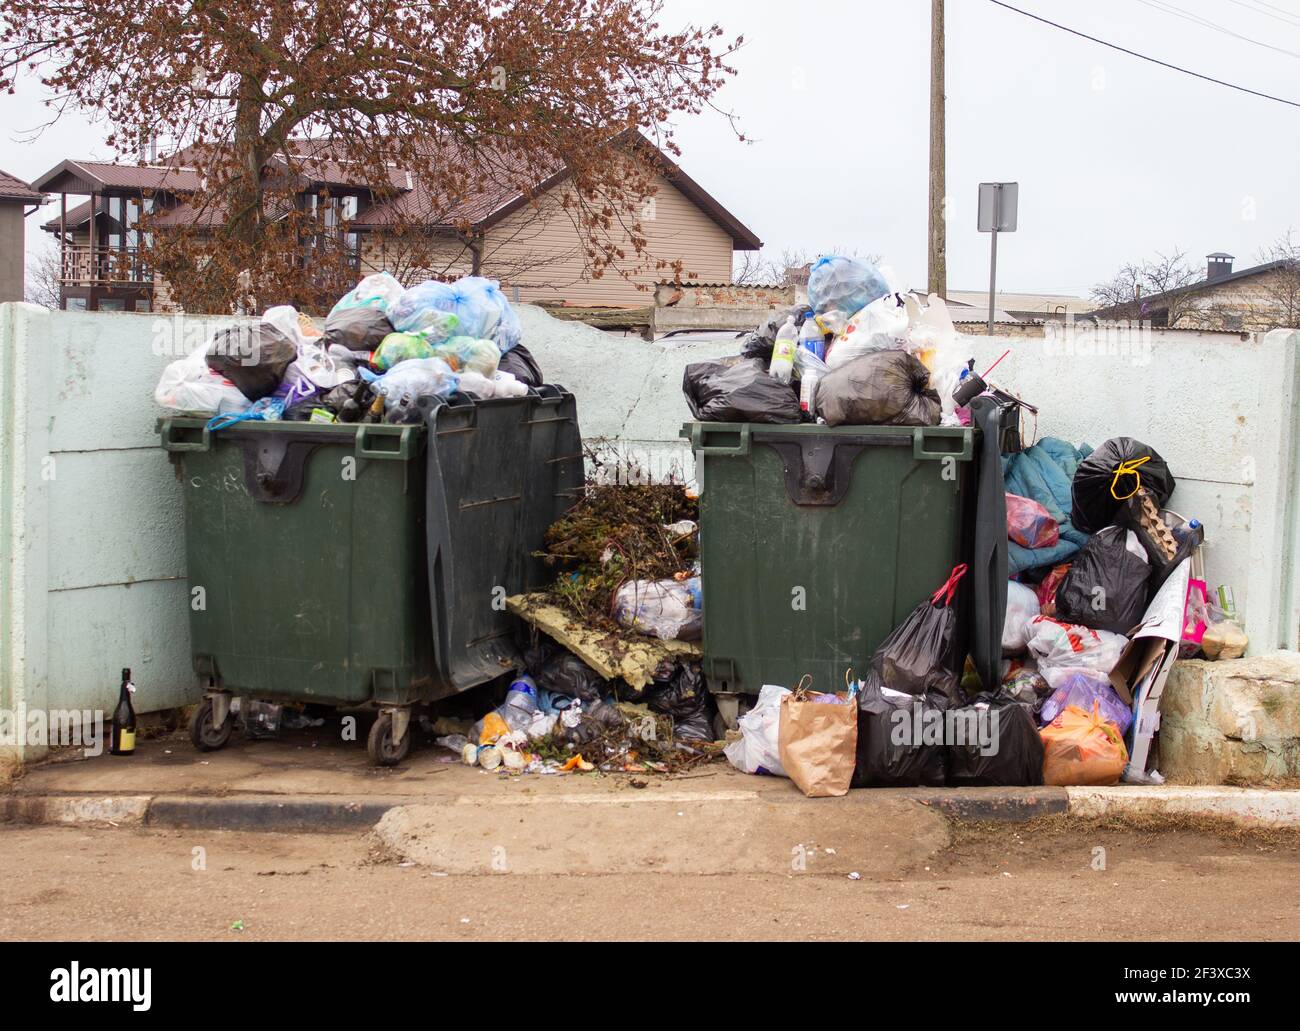 Big Dumpster Full of Garbage Stock Image - Image of garbage, full